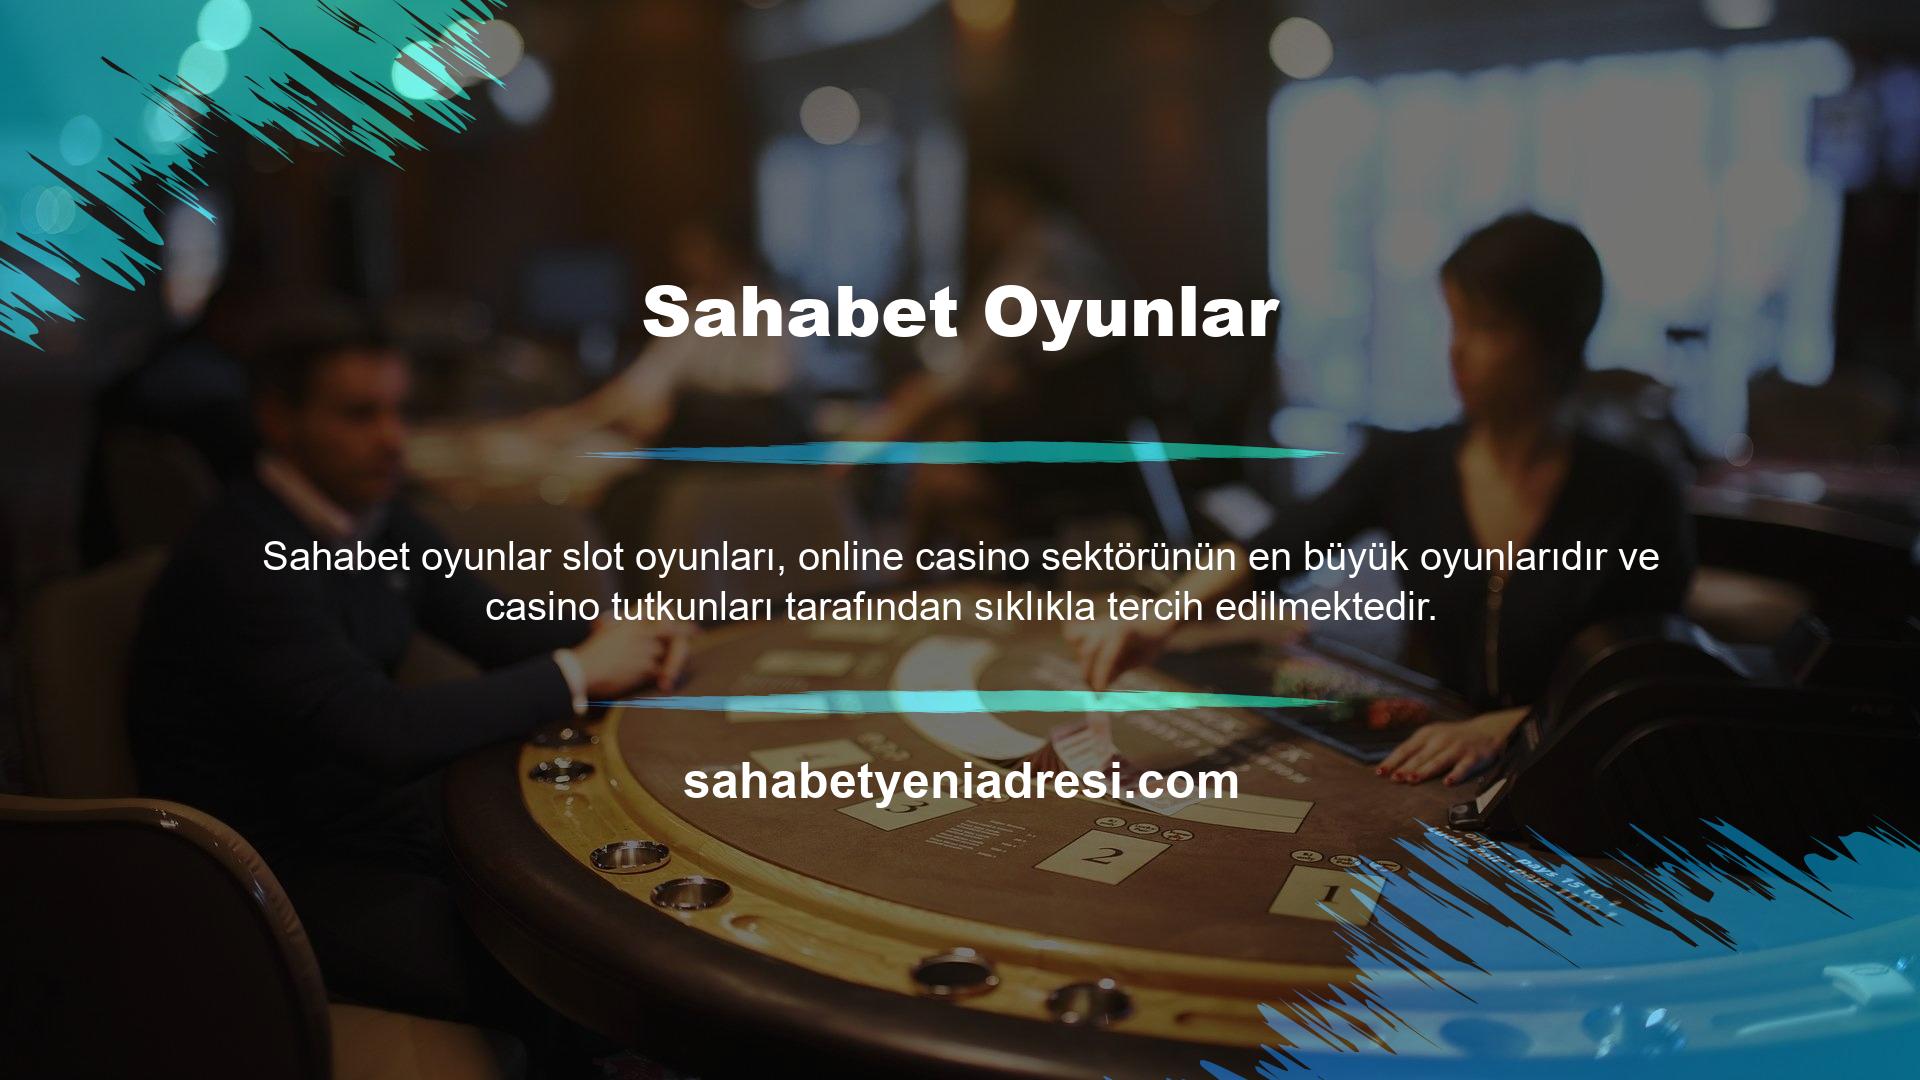 Sahabet web sitesi, küresel slot oyunlarını kullanıcılarına ulaştırmak için slot oyunu sağlayıcılarıyla birlikte çalışmaktadır